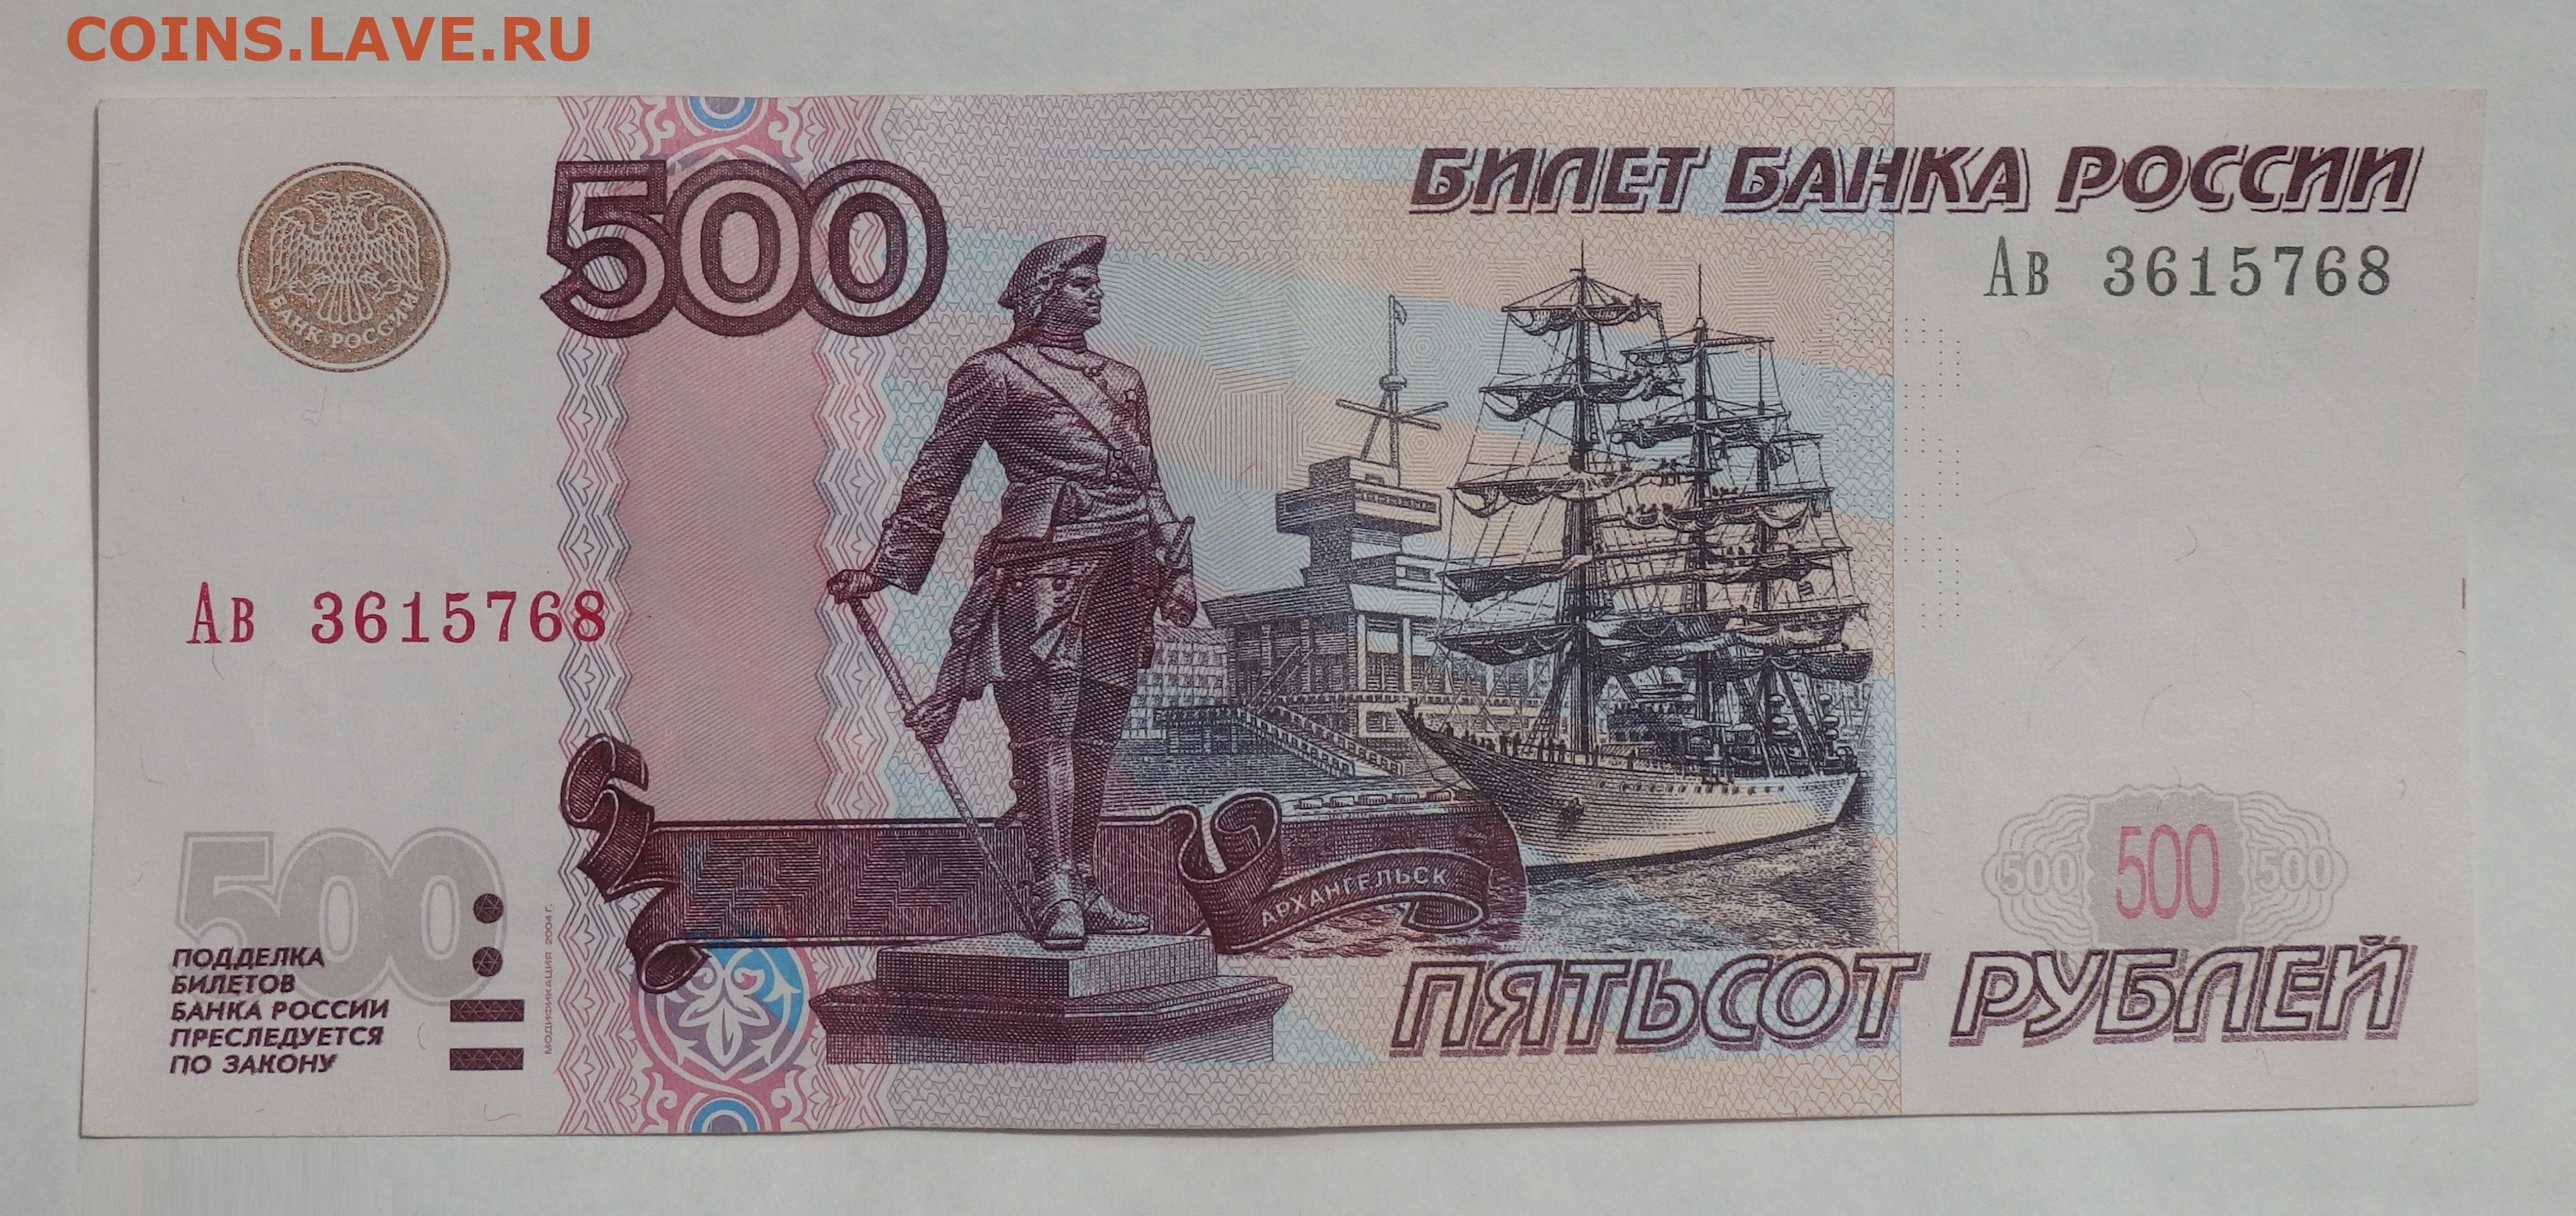 500 рублей по частям. 500 Рублей 1997 модификация 2001. Редкая 500 рублевая купюра. Купюры 500р 1997 года. Купюра 500 рублей.